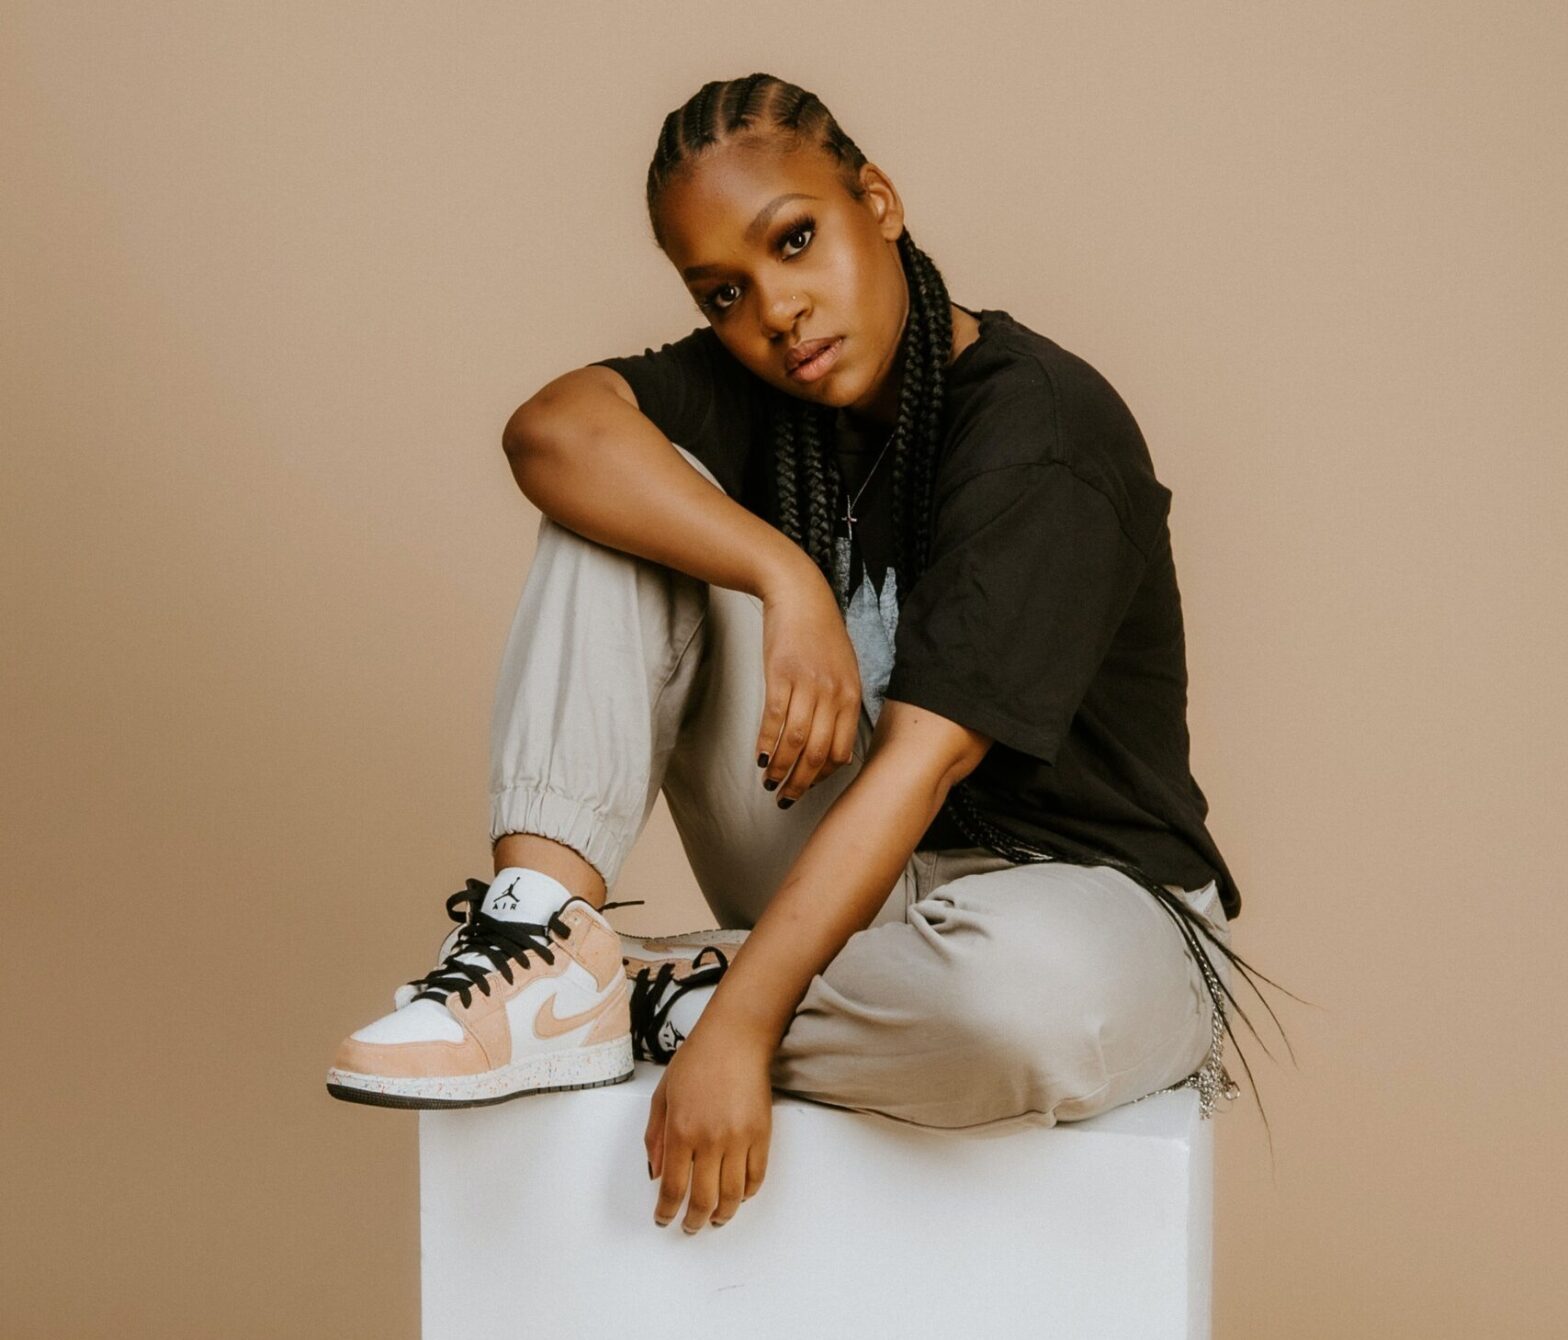 Black woman wearing sneakers